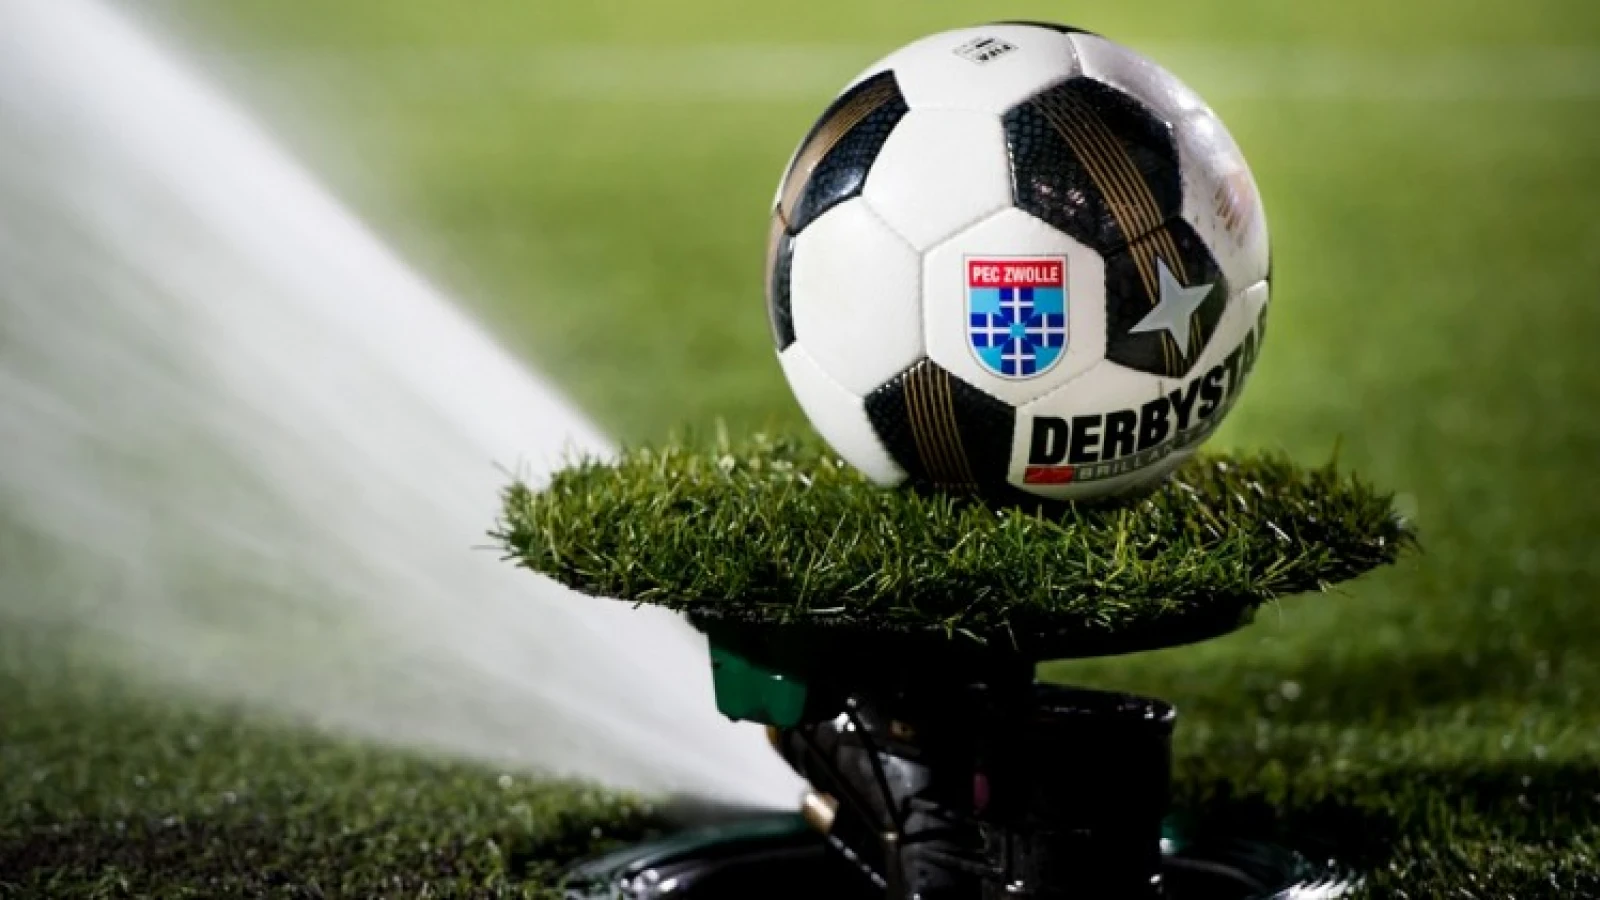 Kunstgras-kwestie verdeelt Eredivisie-clubs, totaalakkoord mijlenver weg